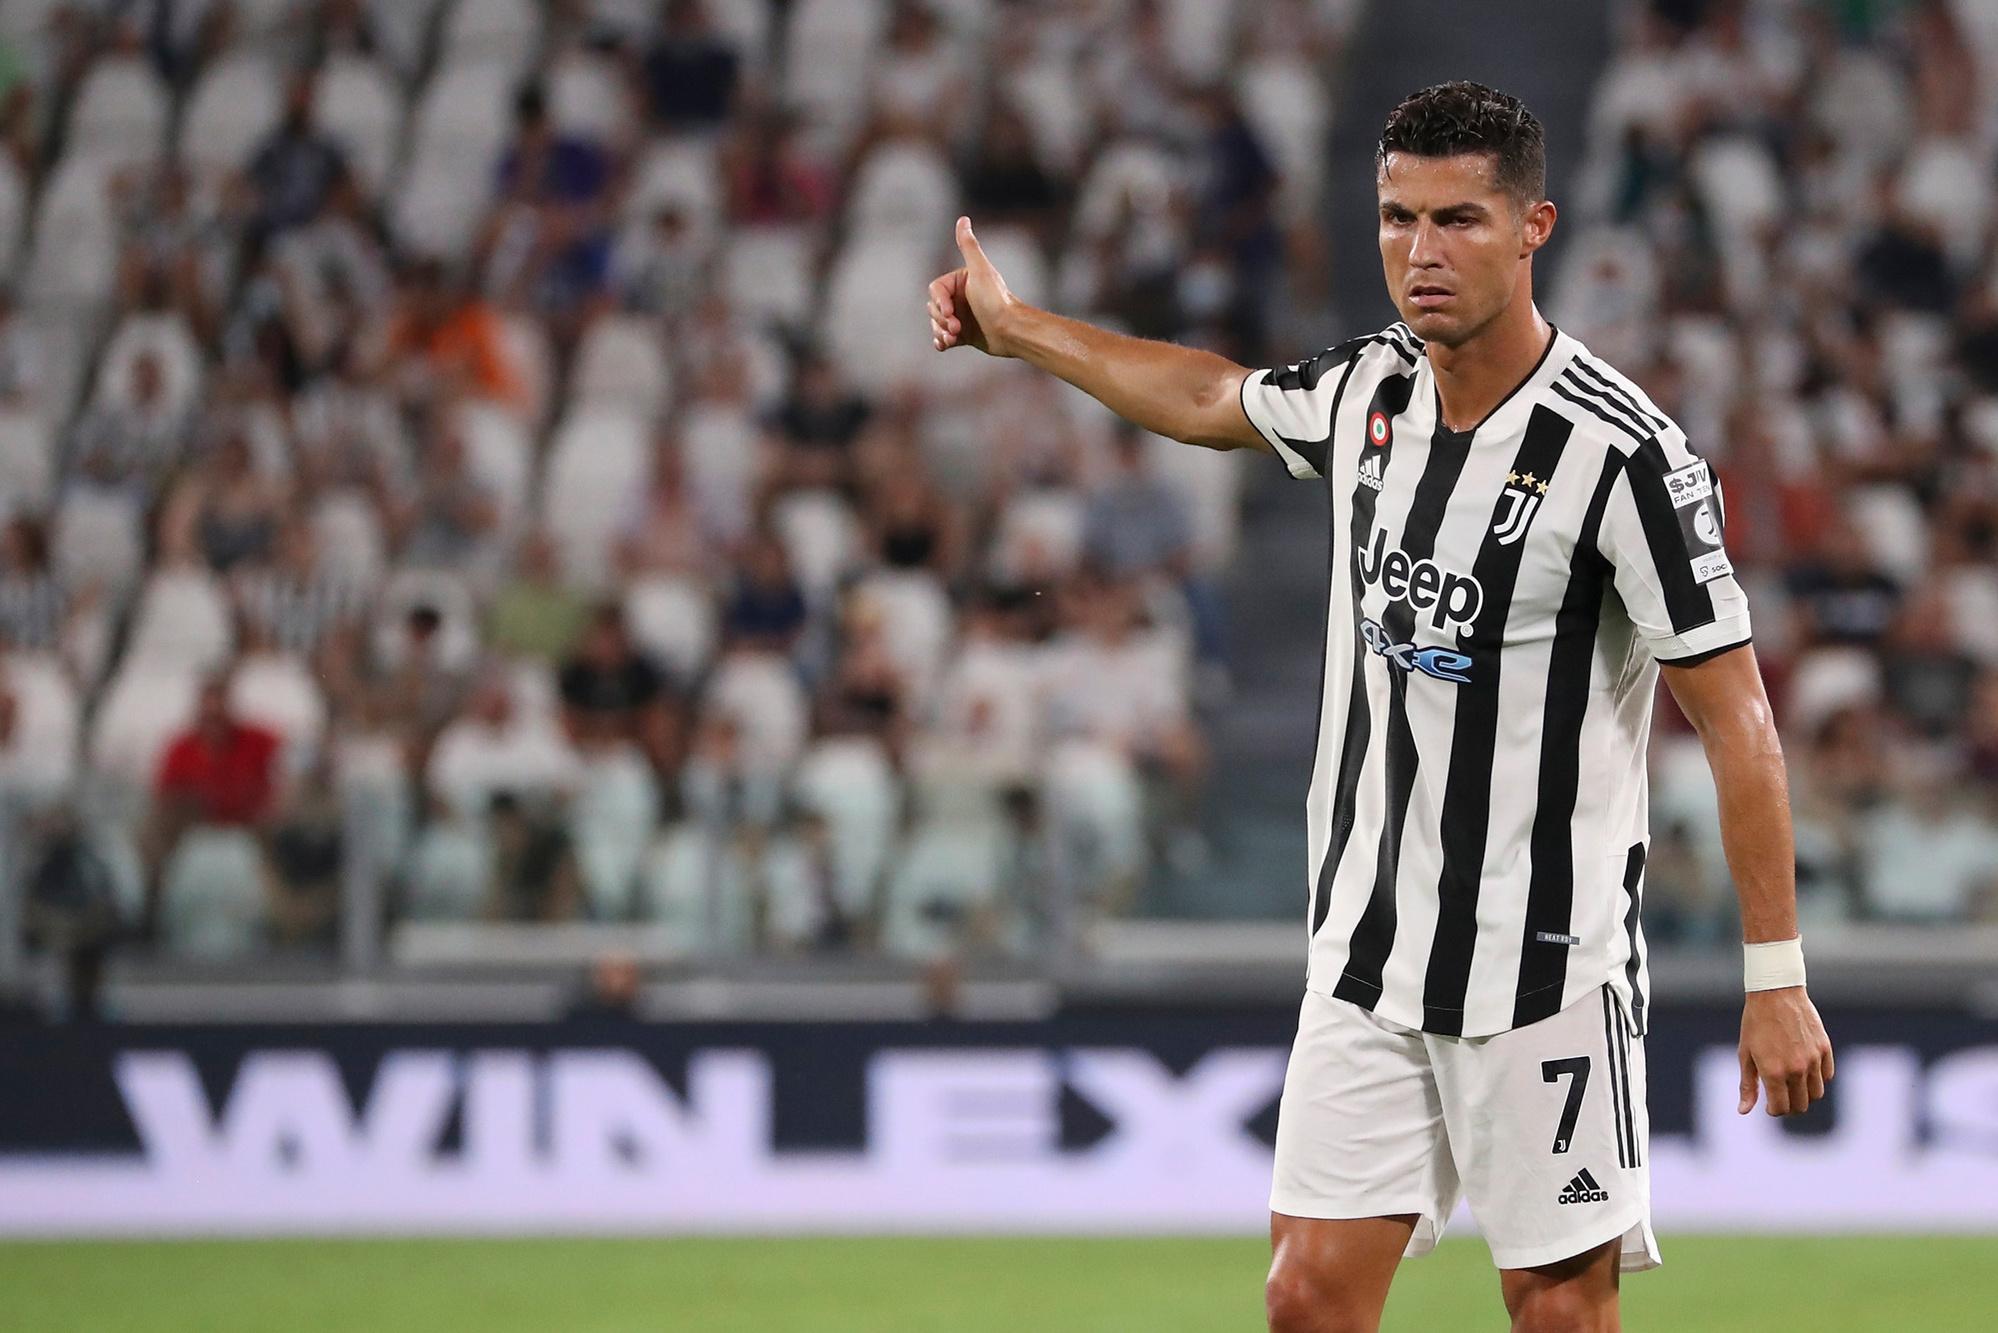 De arme dame: waarom Juventus hunkert naar een Super League